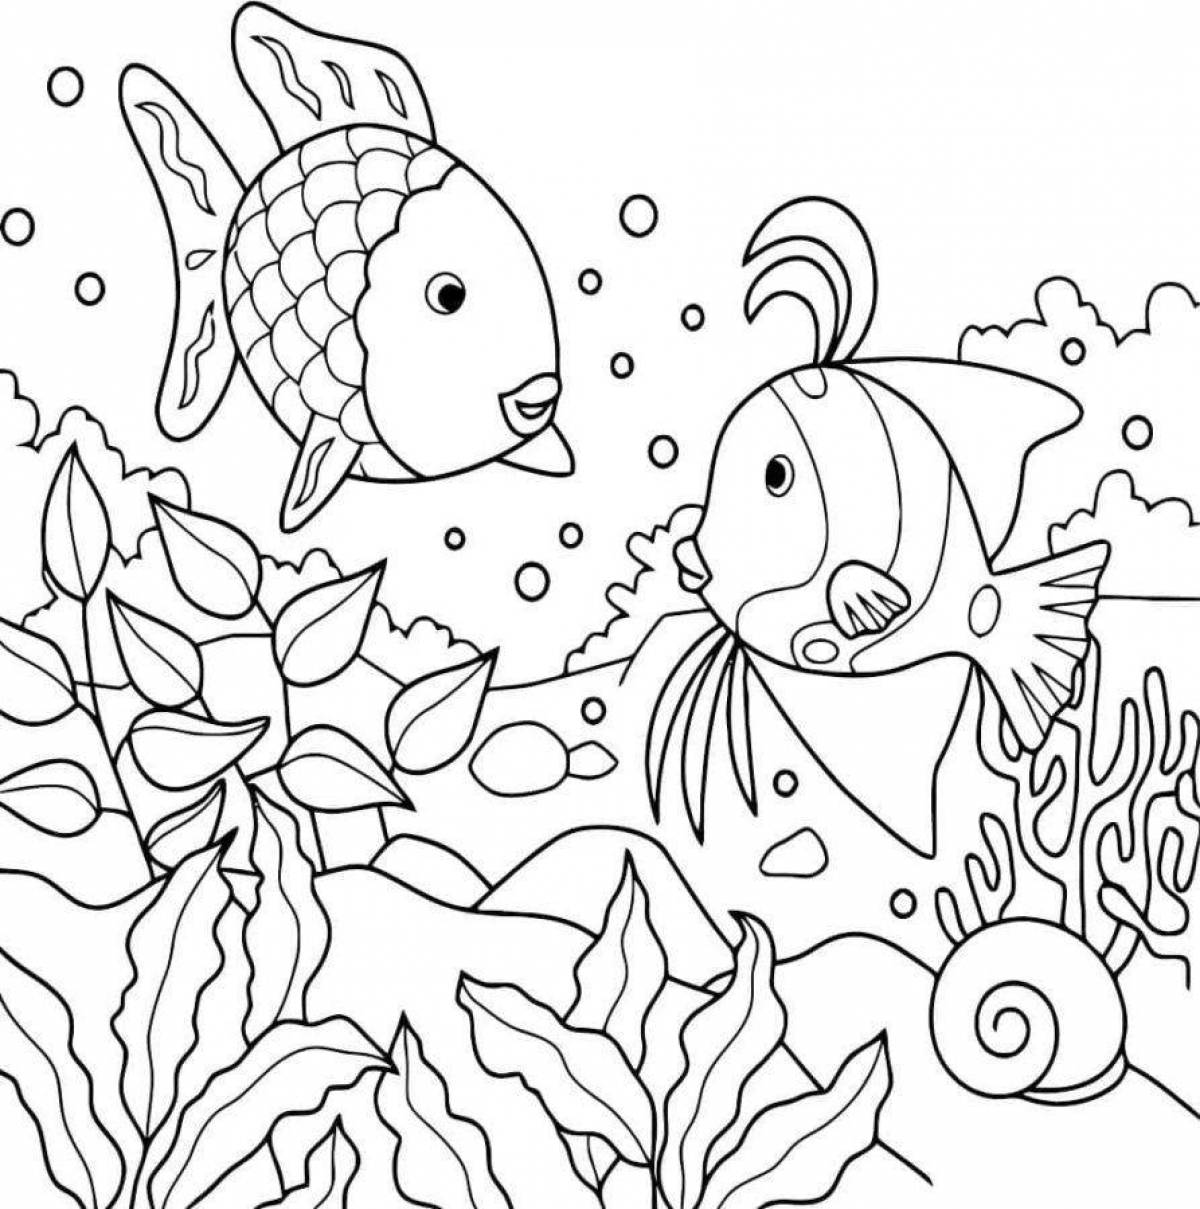 Сказочная морская жизнь раскраска для детей 5-6 лет